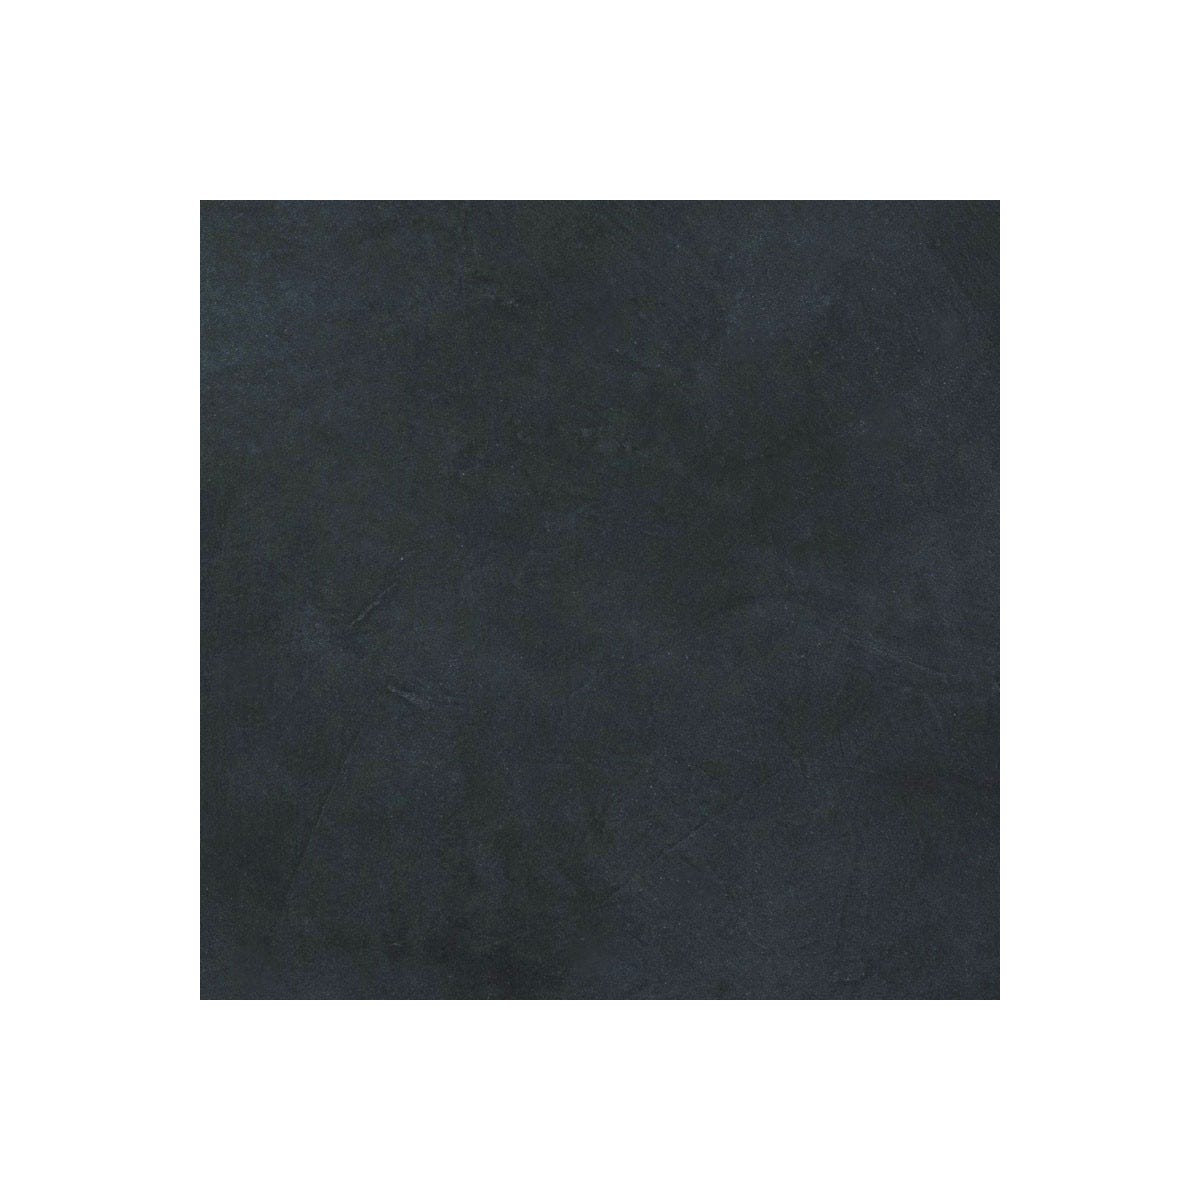 Béton Ciré Sol en - Primaire et vernis de finition inclus - 2 m² (en 2 couches) - Aronia Gris Noir - ARCANE INDUSTRIES 1